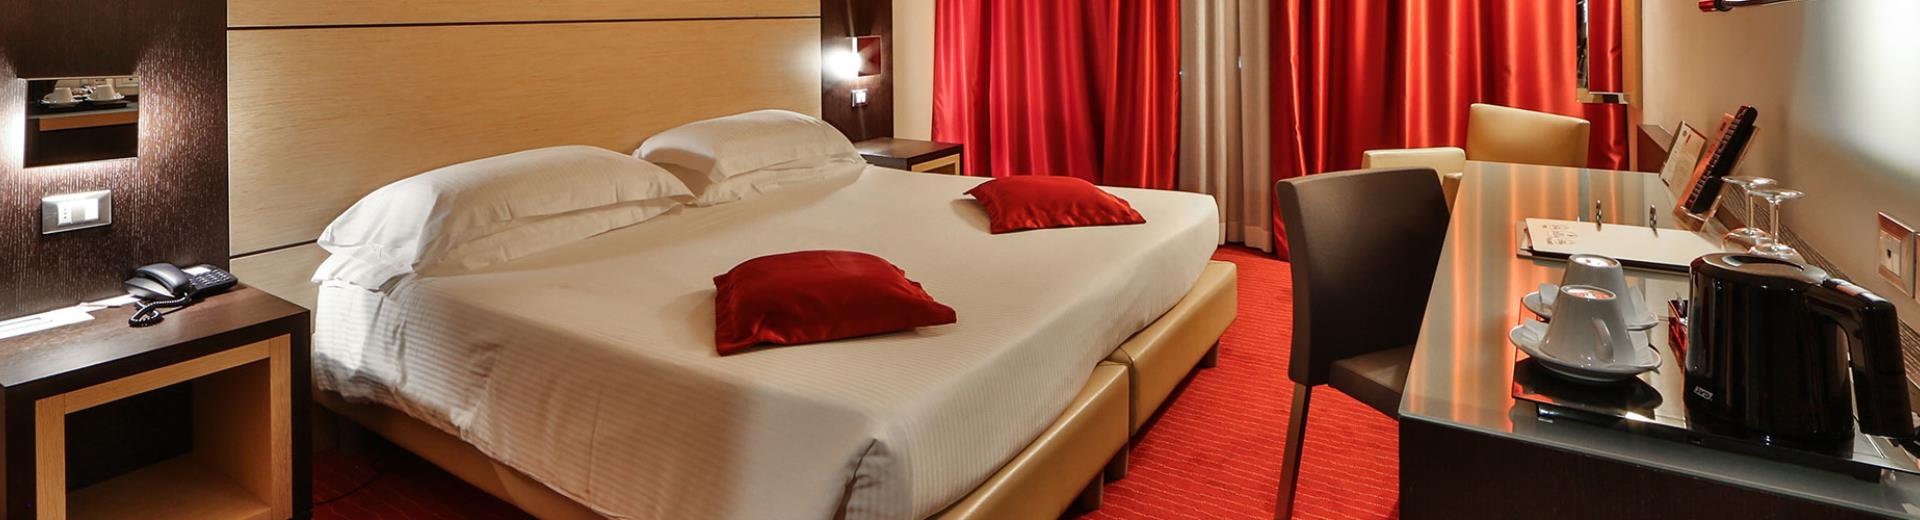  Cerchi un hotel per il tuo soggiorno a Padova (PD)? Prenota al Best Western Plus Hotel Galileo